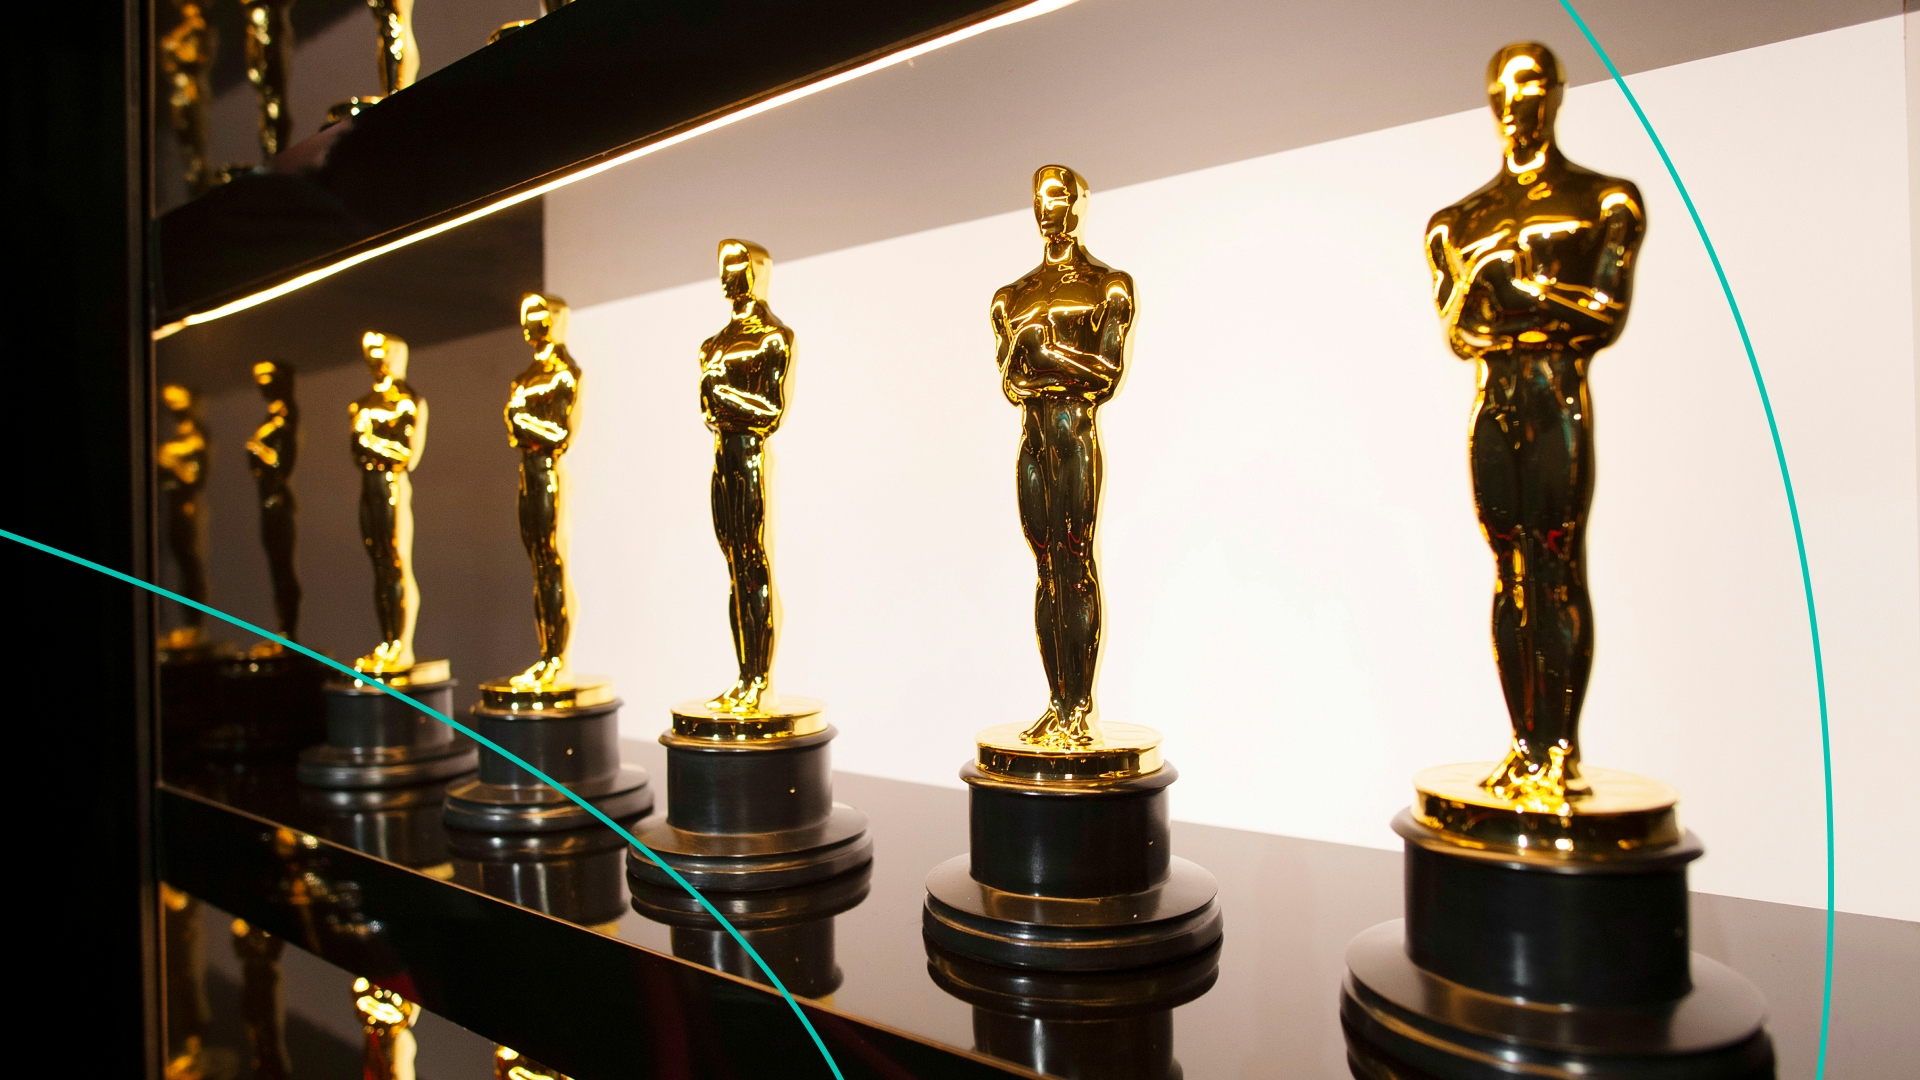 Oscars awards lined up on a shelf